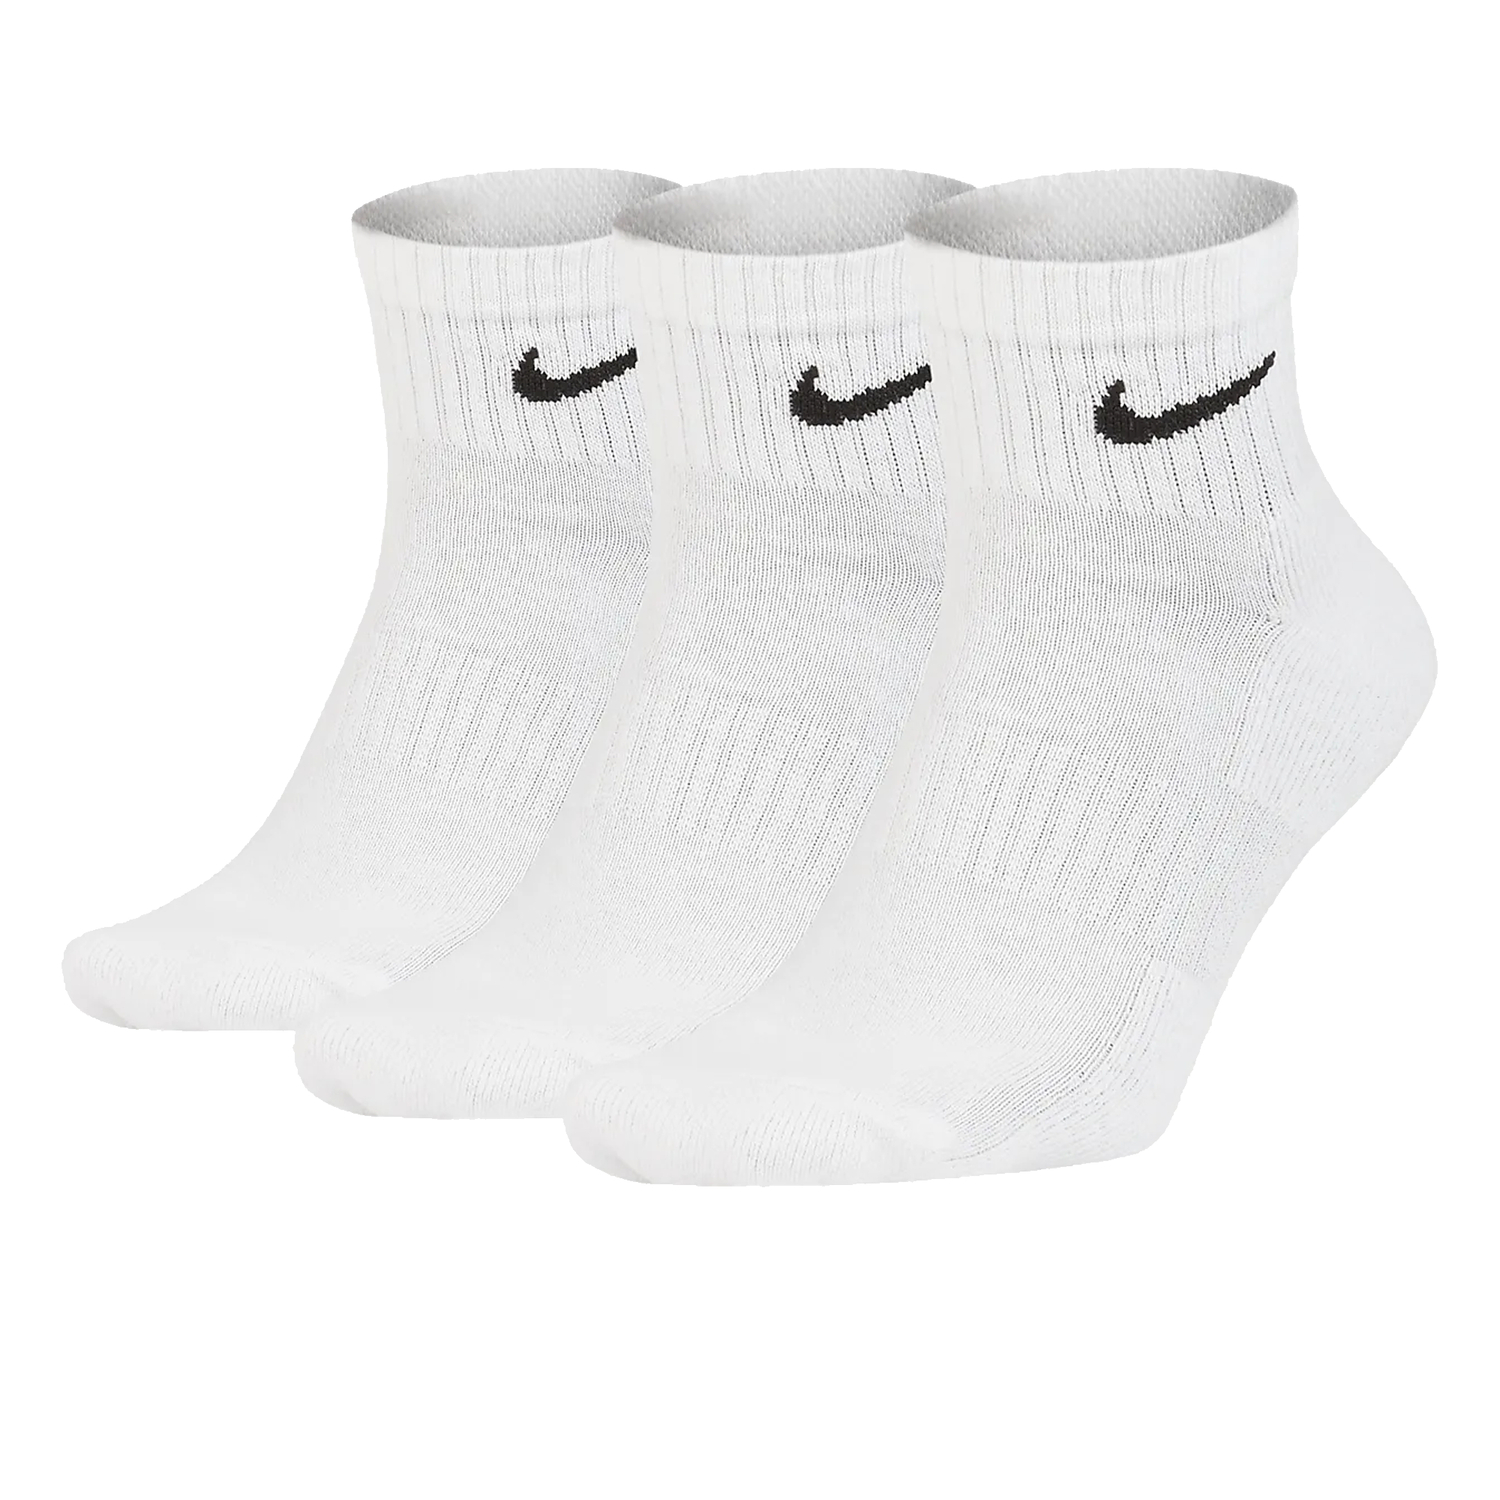 5 paires de chaussettes nike - Nike